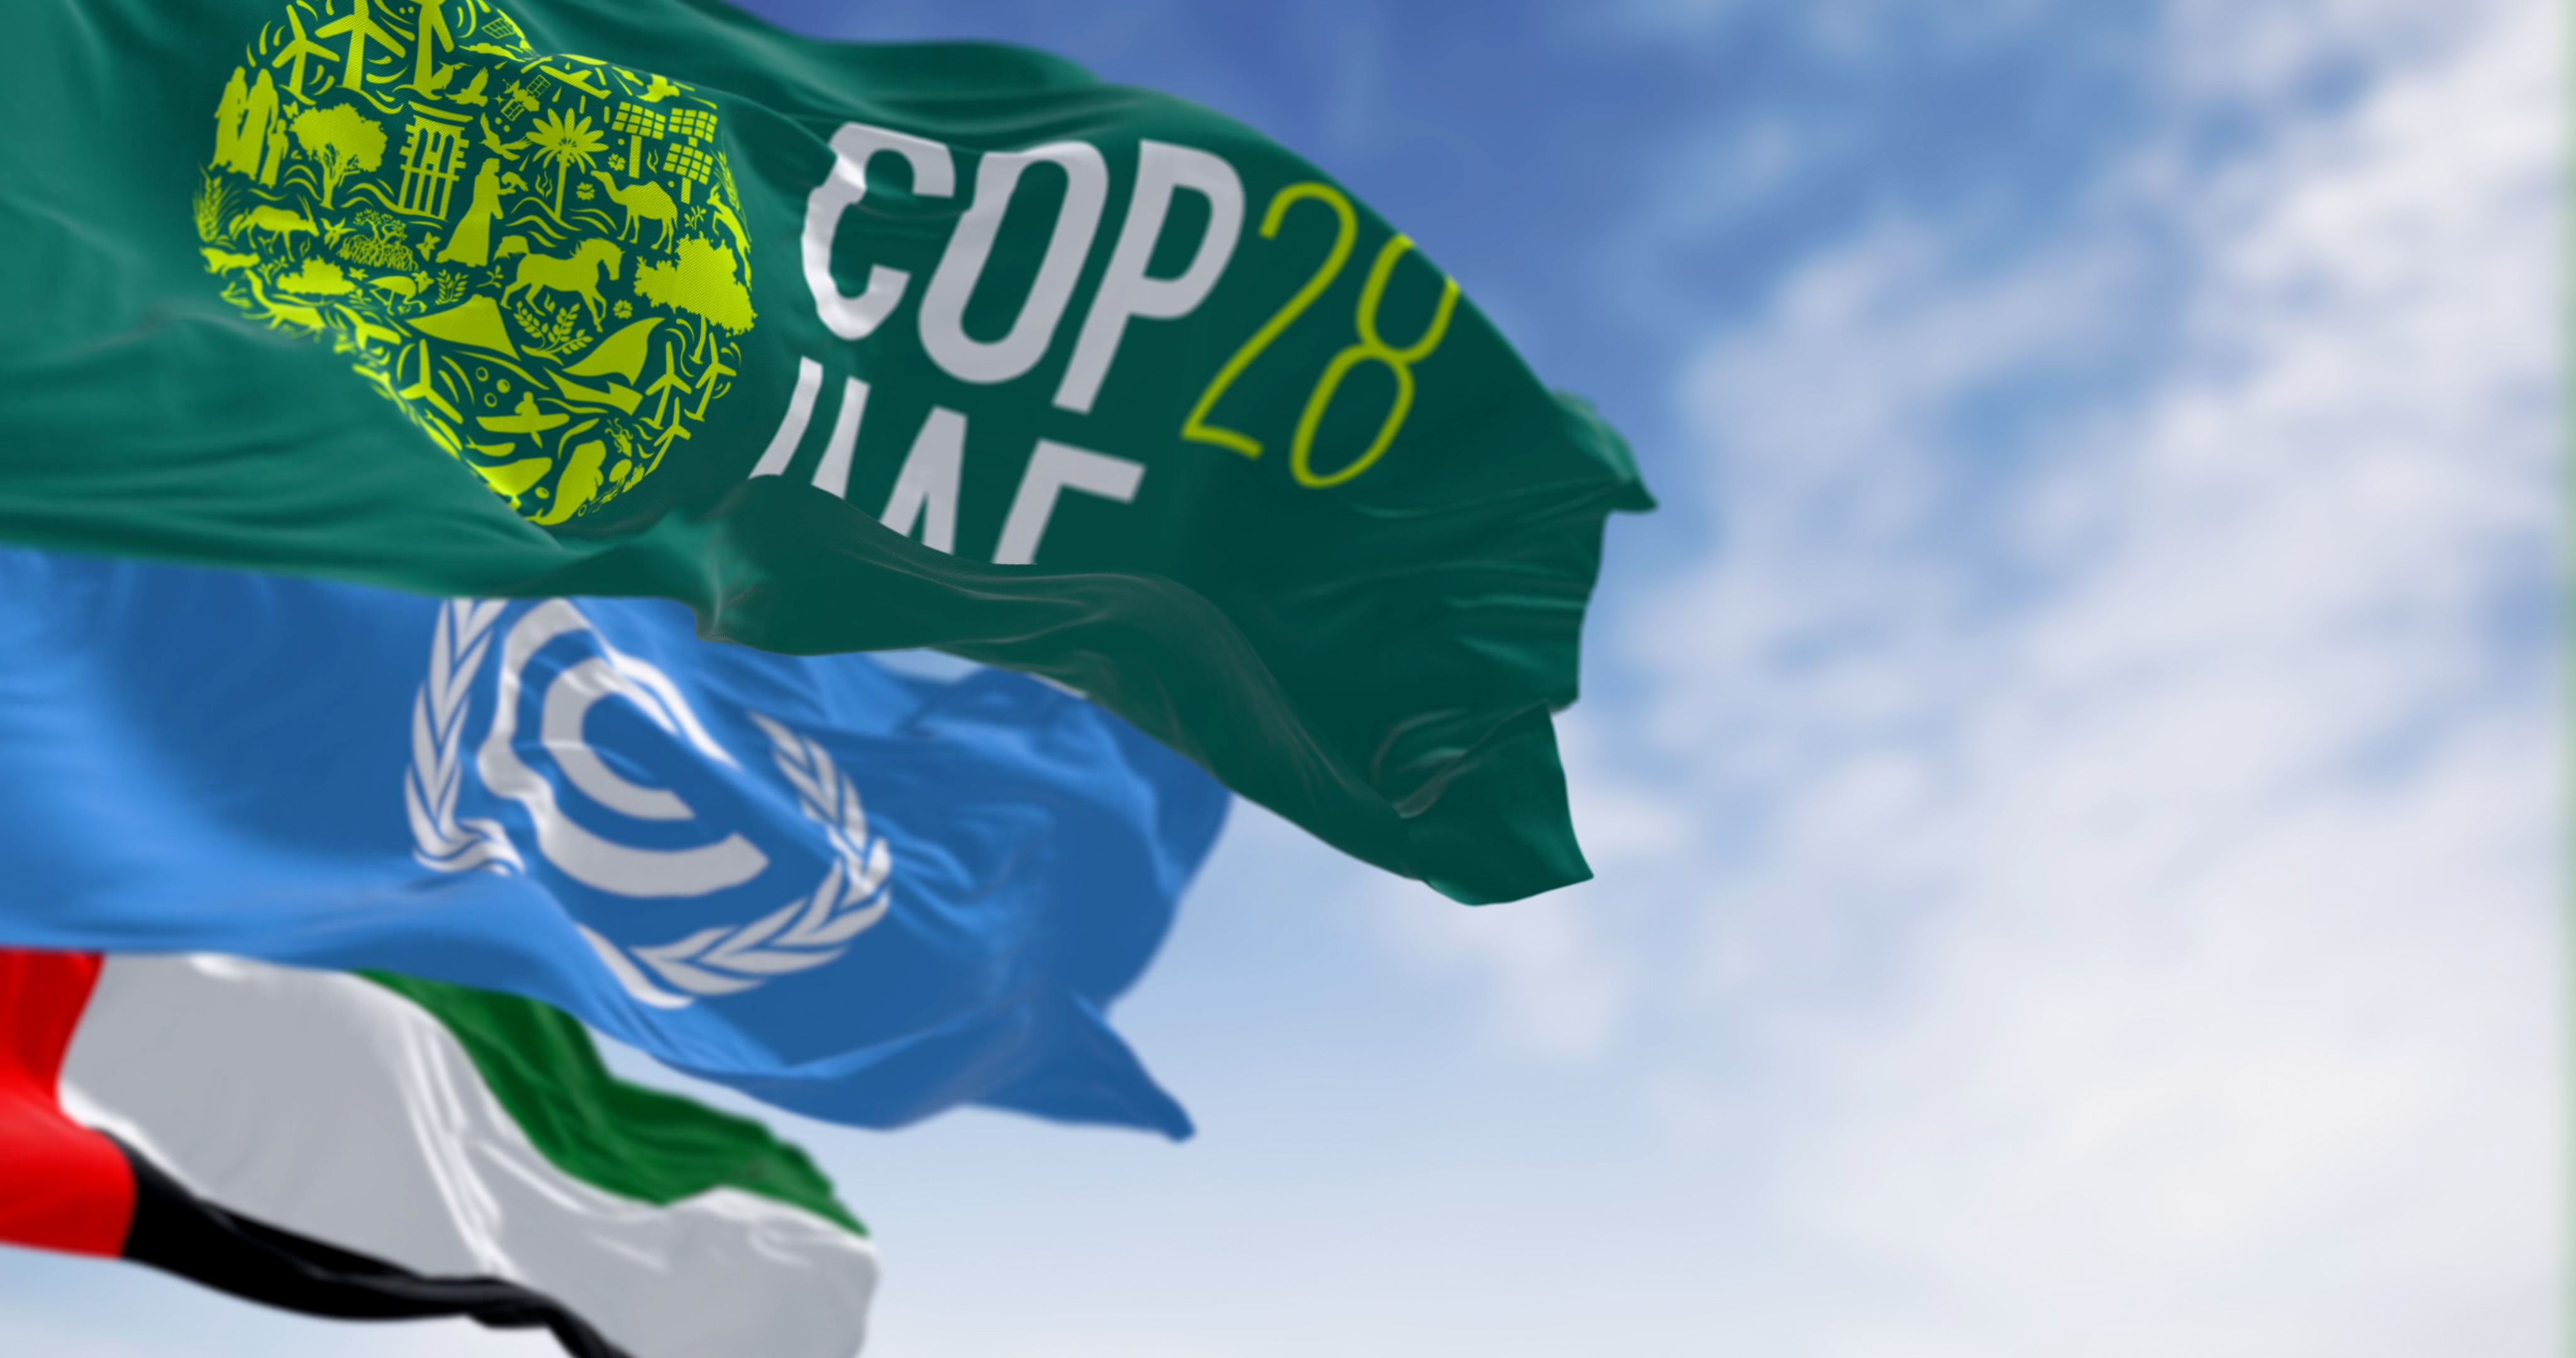 COP28 UAE flag